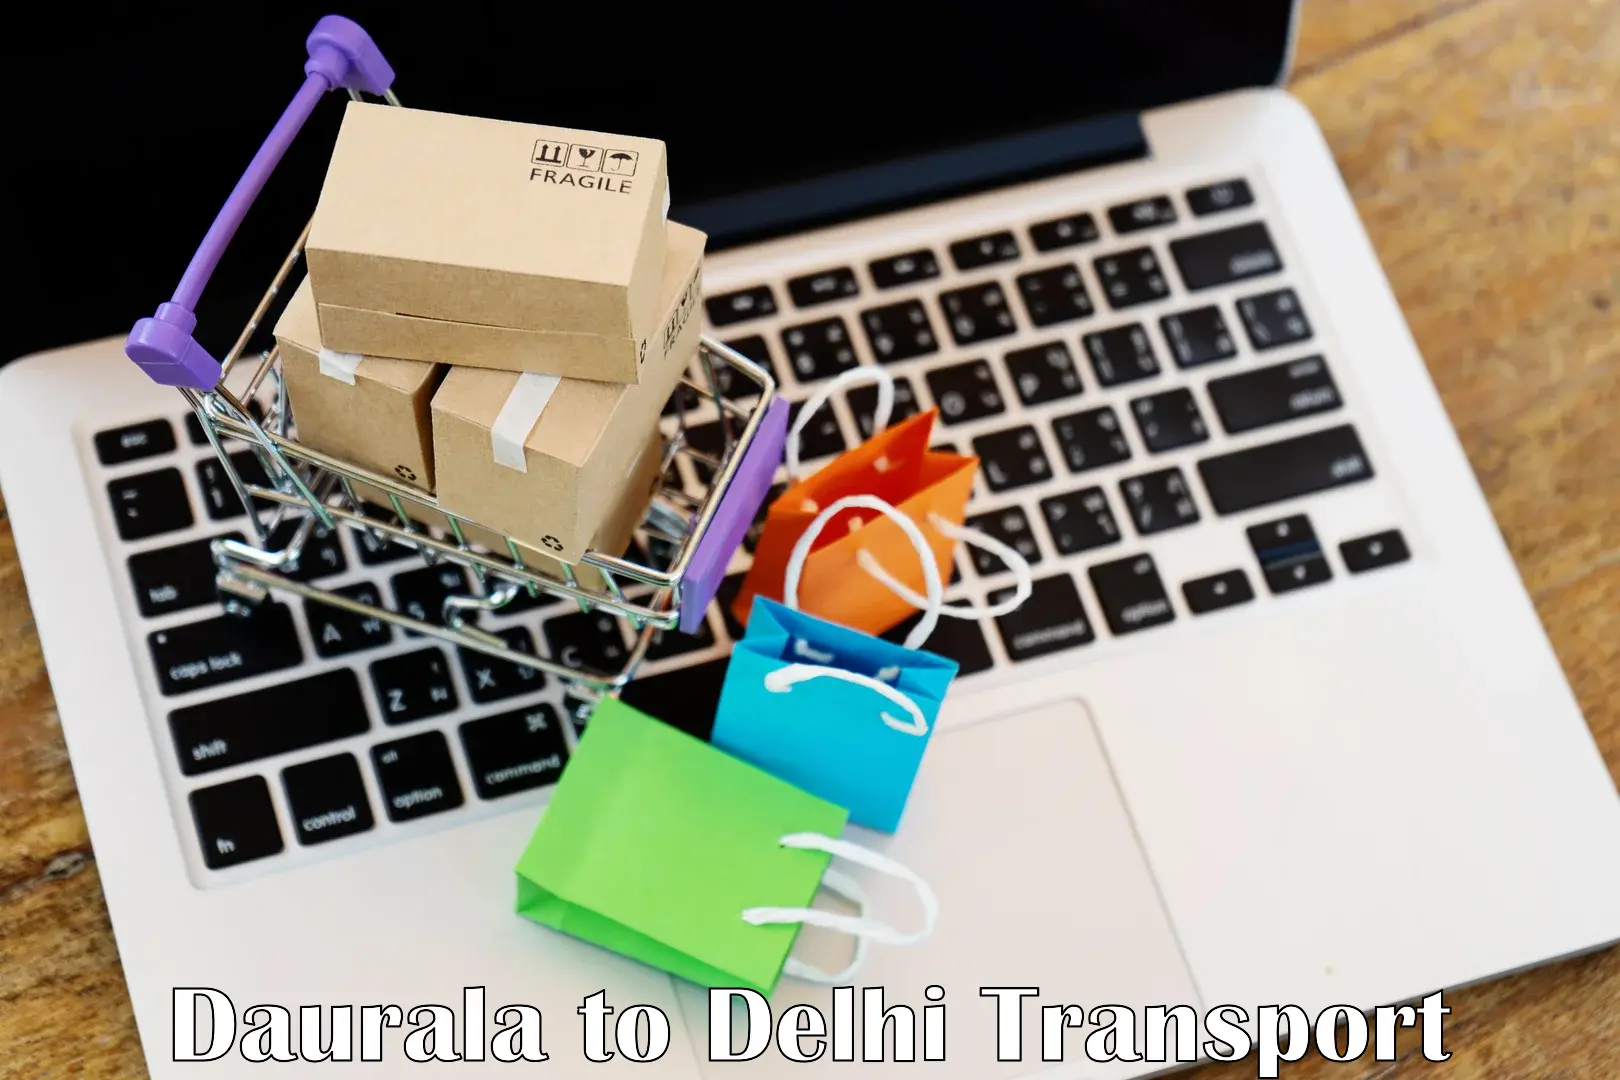 Road transport services Daurala to NIT Delhi